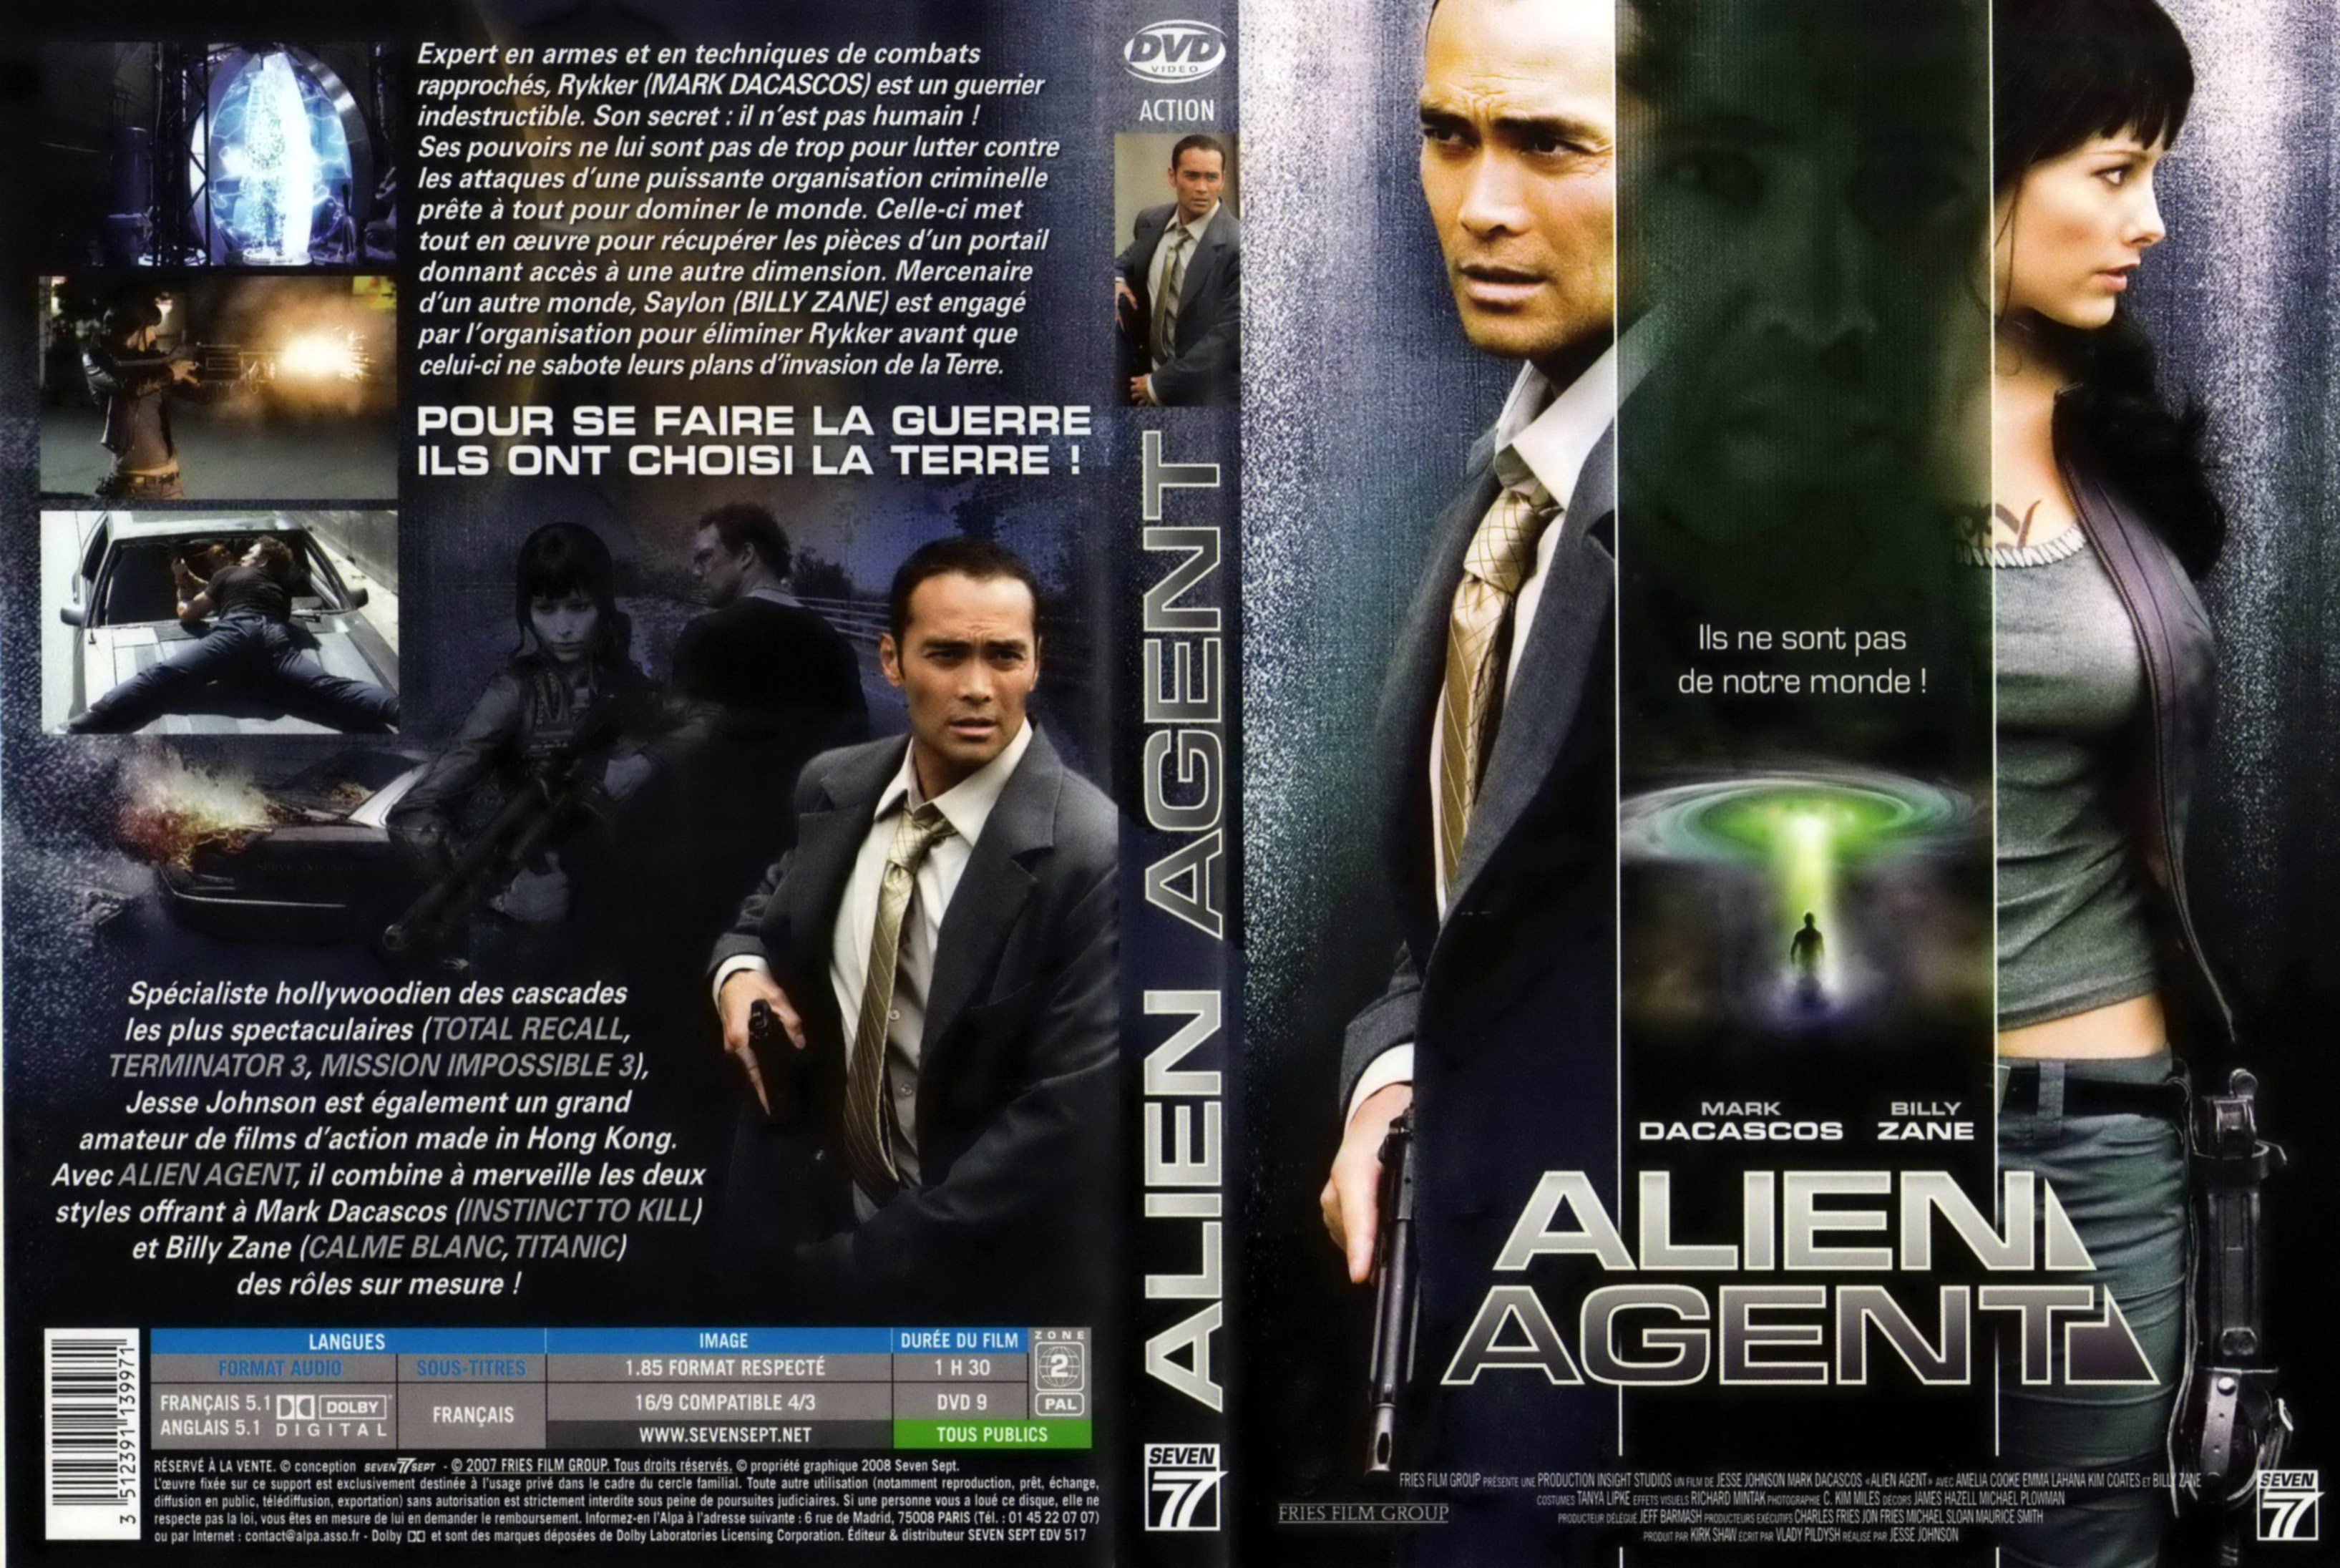 Jaquette DVD Alien agent